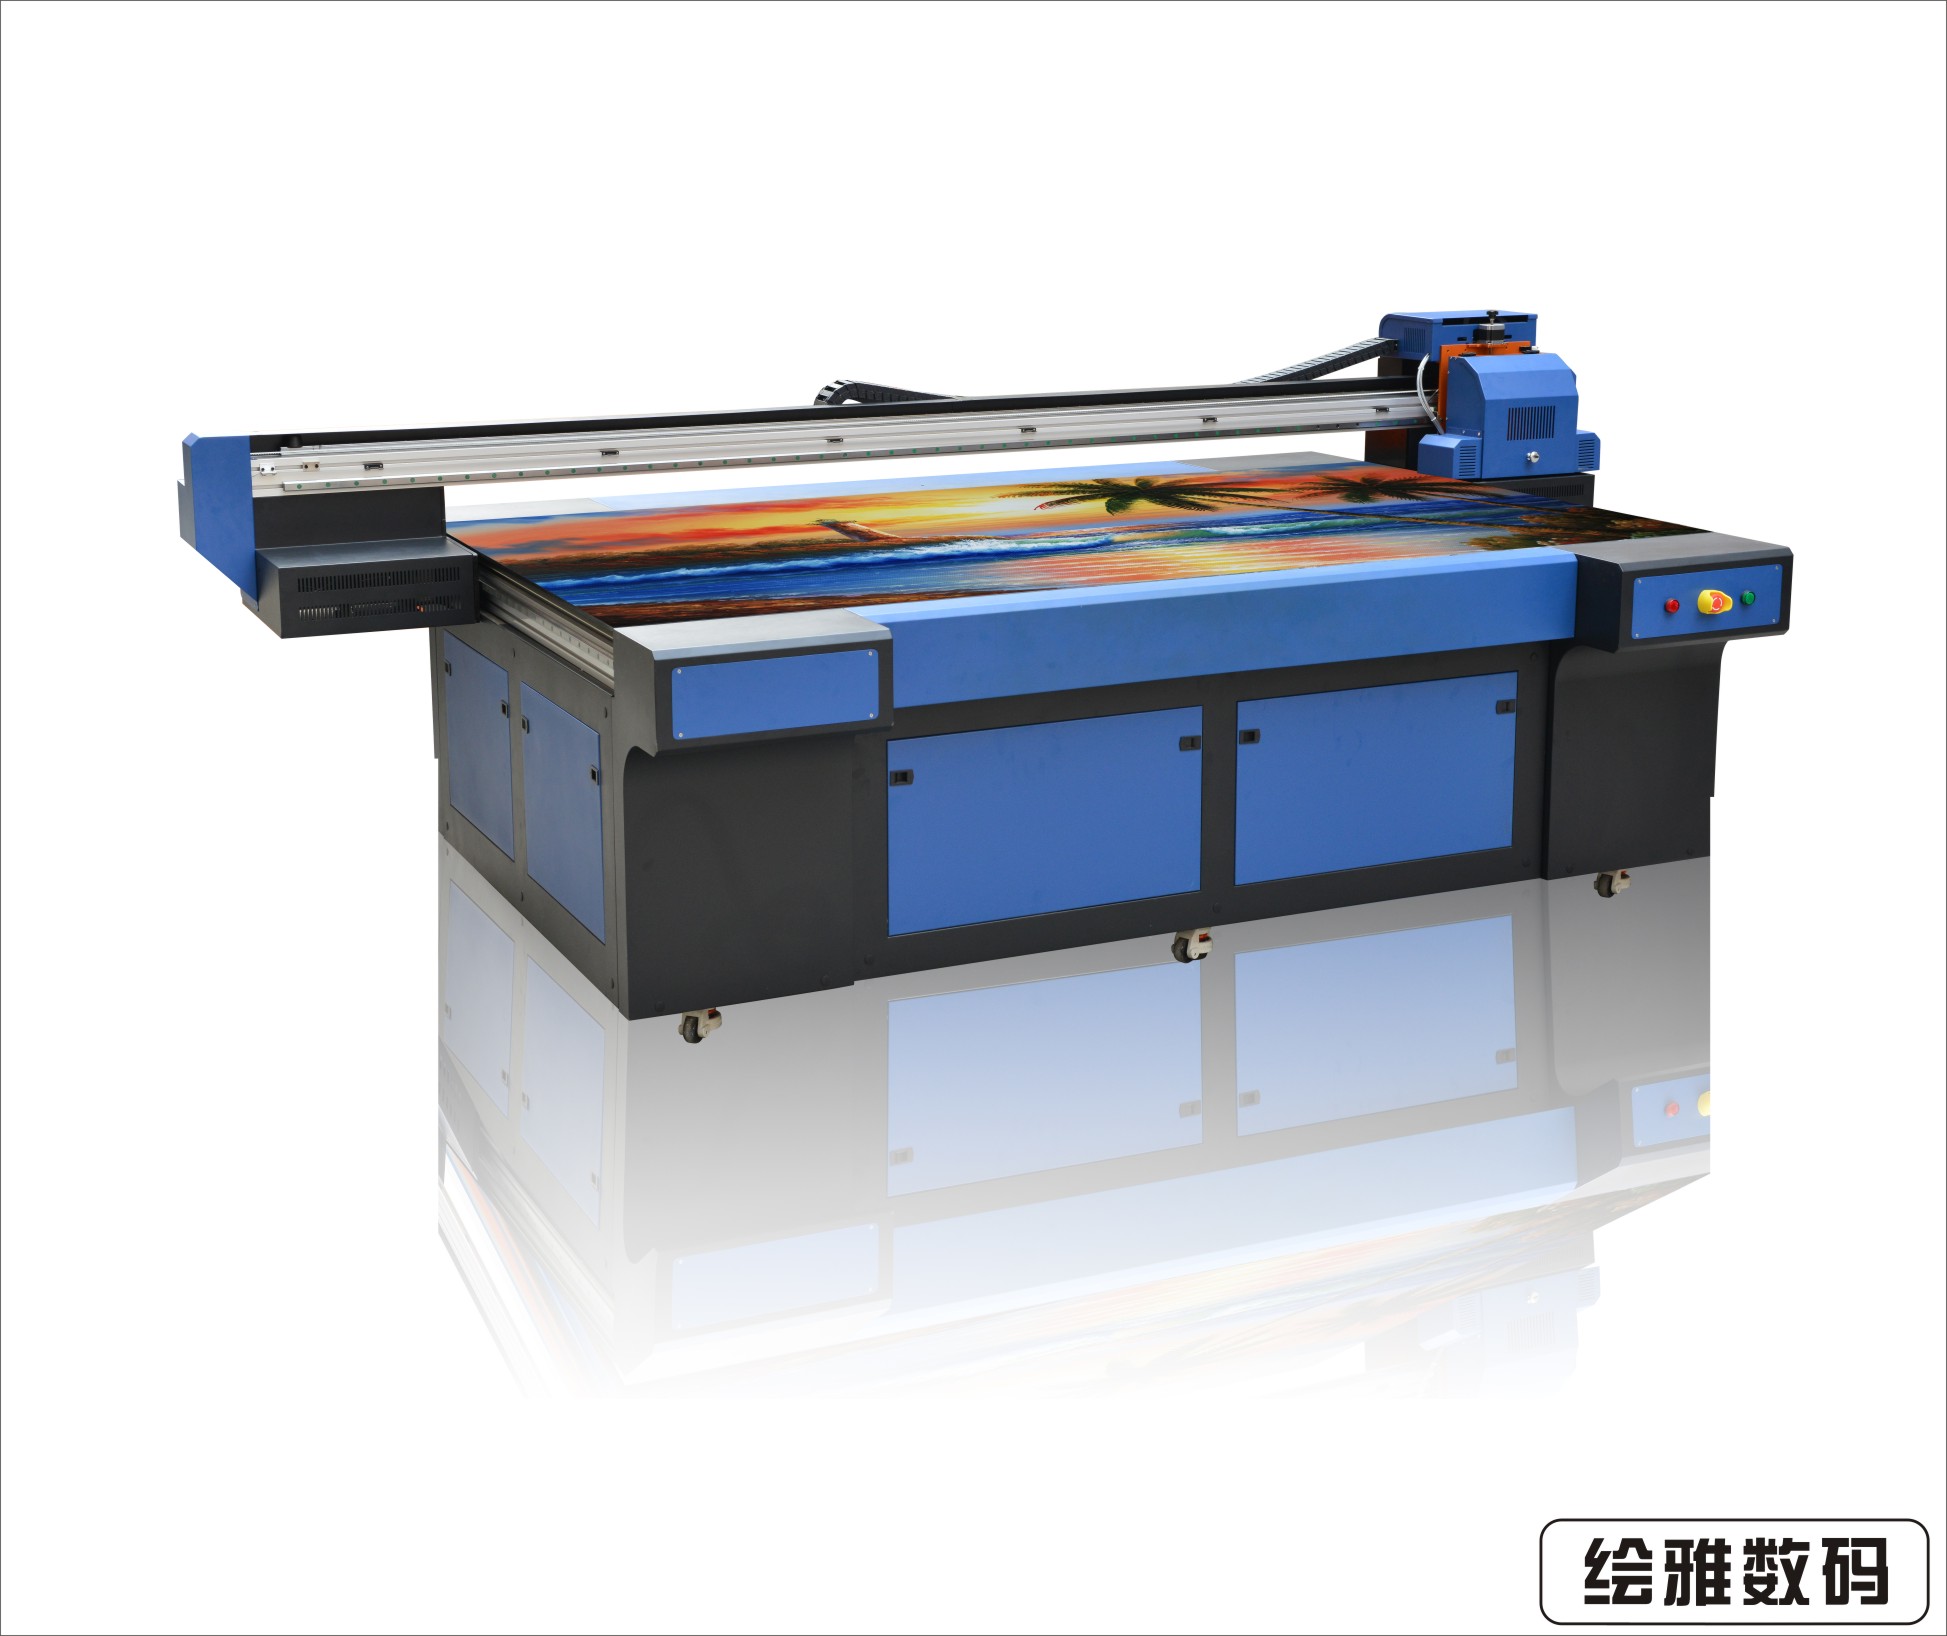 供应郑州塑胶工艺品印花打印机免费培训 南京绘雅工艺品印花打印机免费培训图片